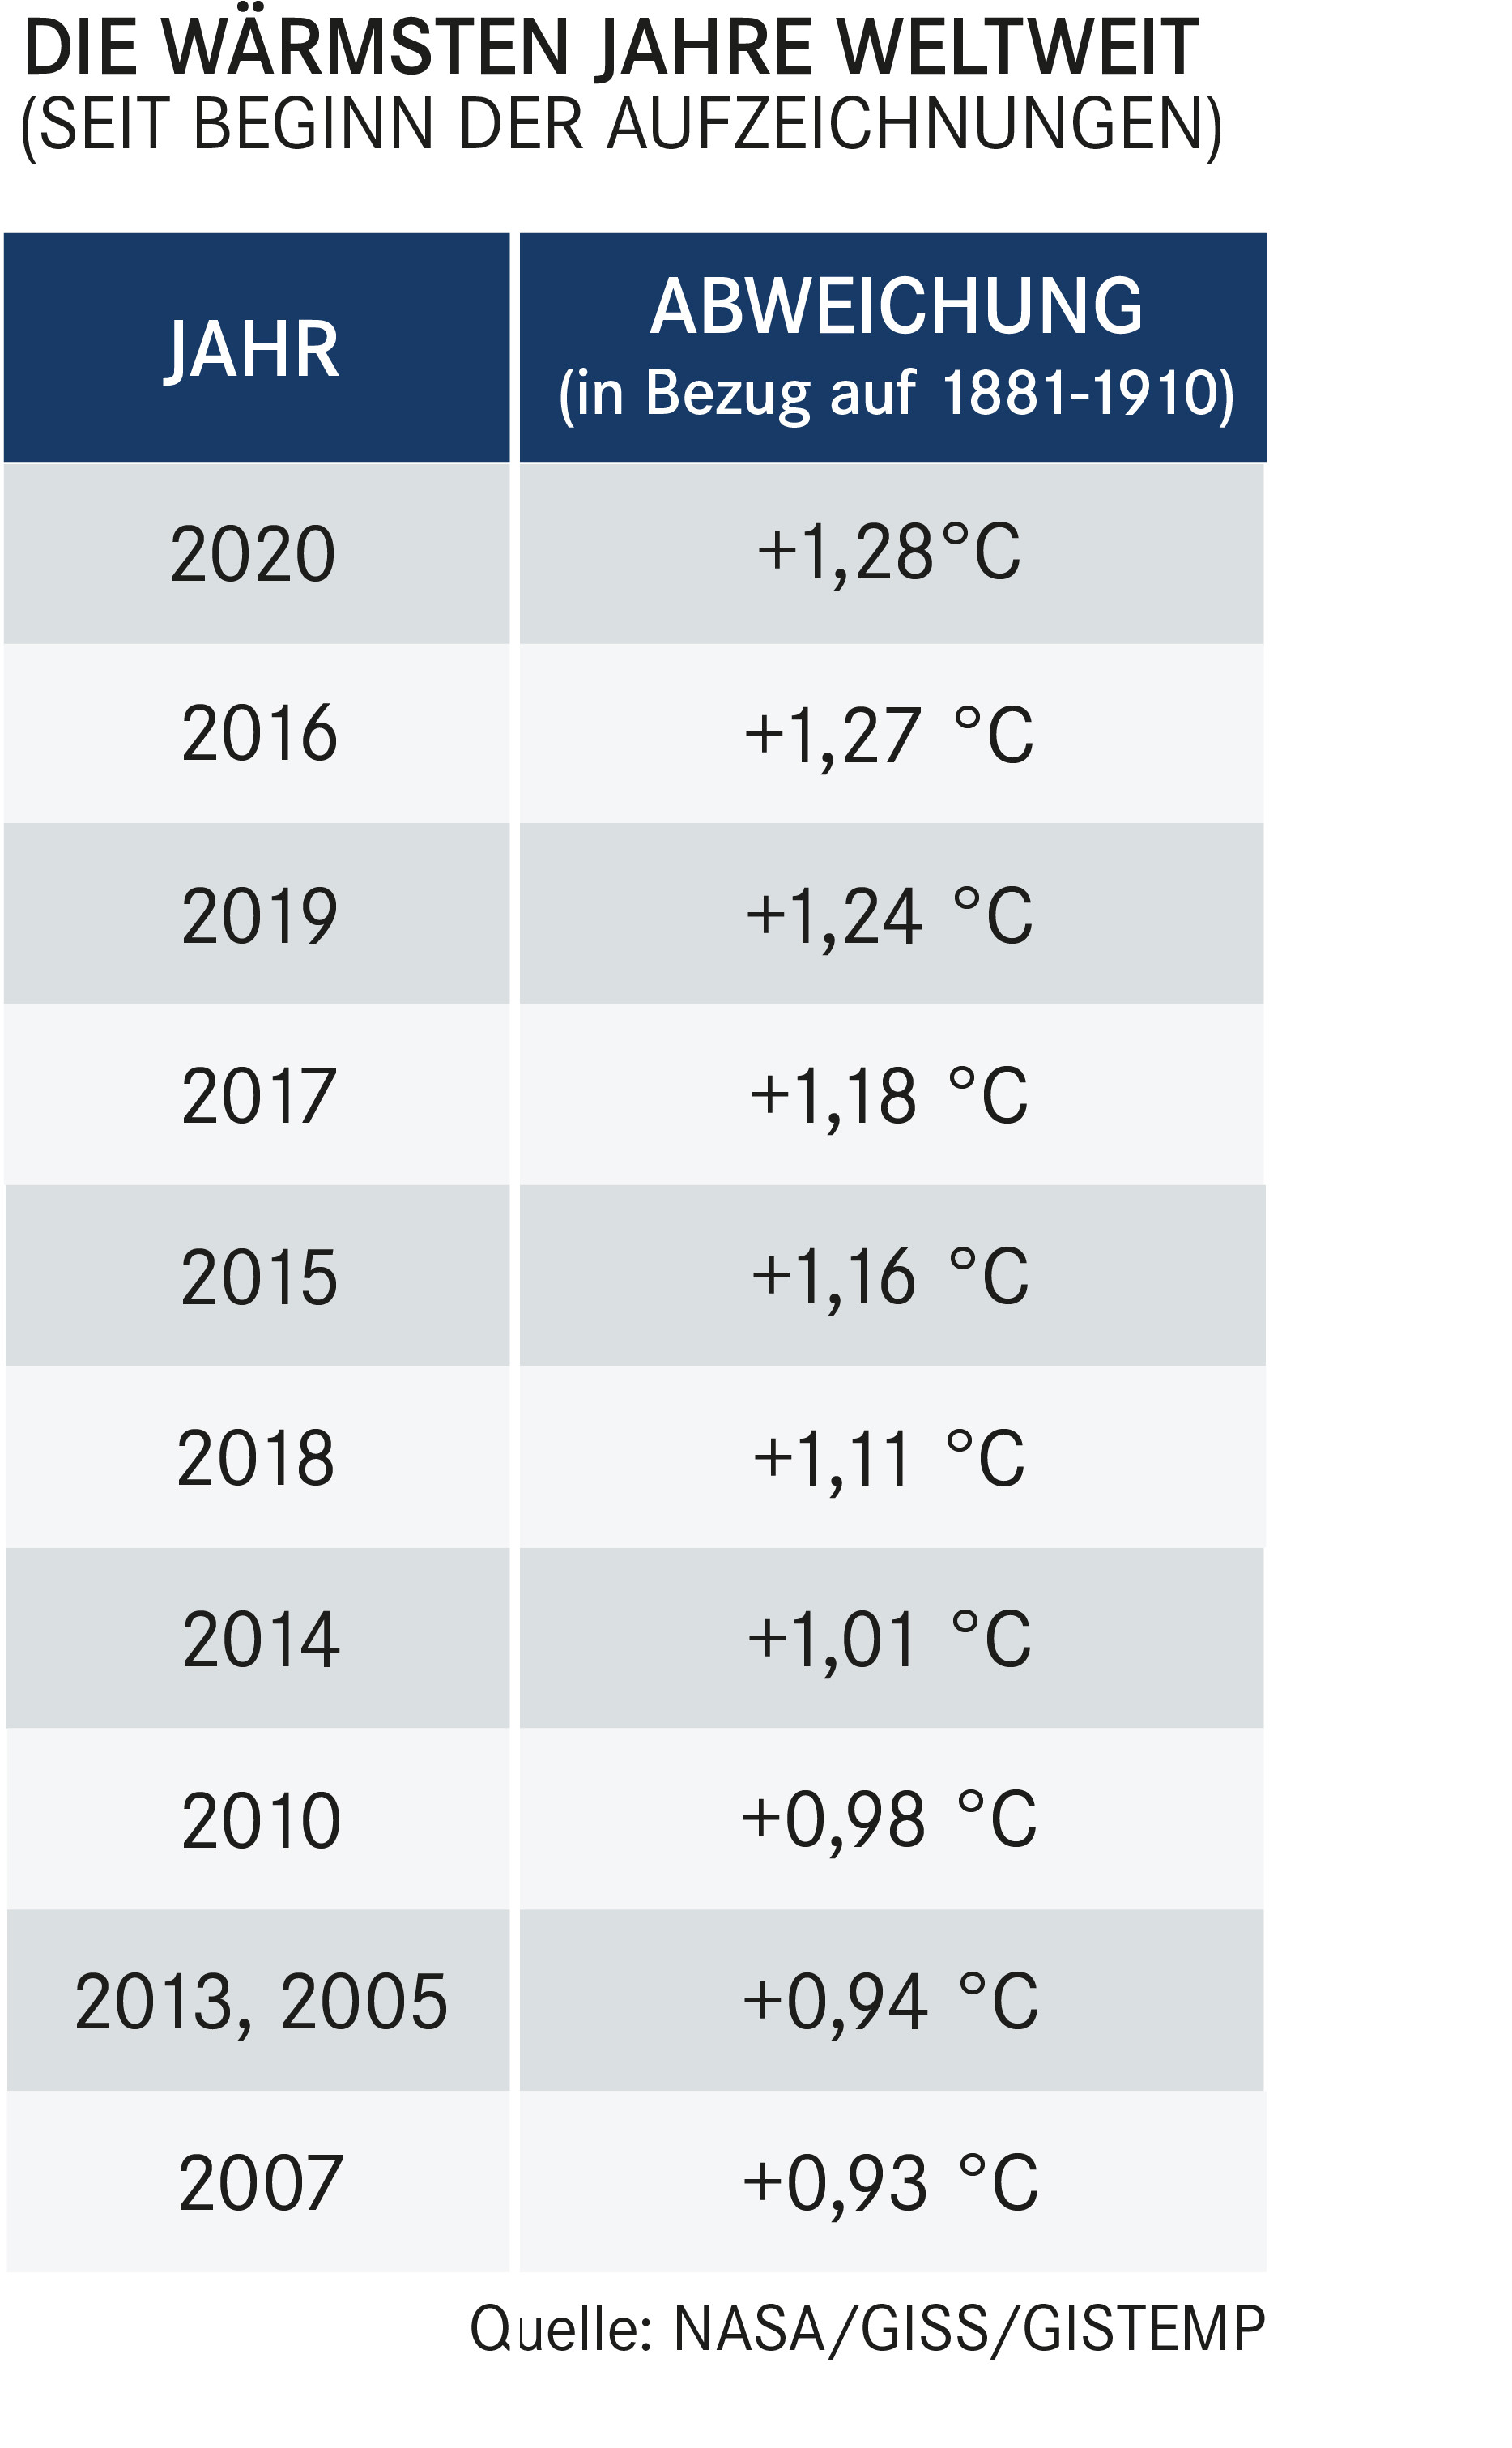 Tabelle mit den wärmsten Jahren seit Beginn der Aufzeichnungen. Aufzählung von Platz 1 bis Platz 10: 2020, 2016, 2019, 2017, 2015, 2018, 2014, 2010, 2013 und 2005, 2007